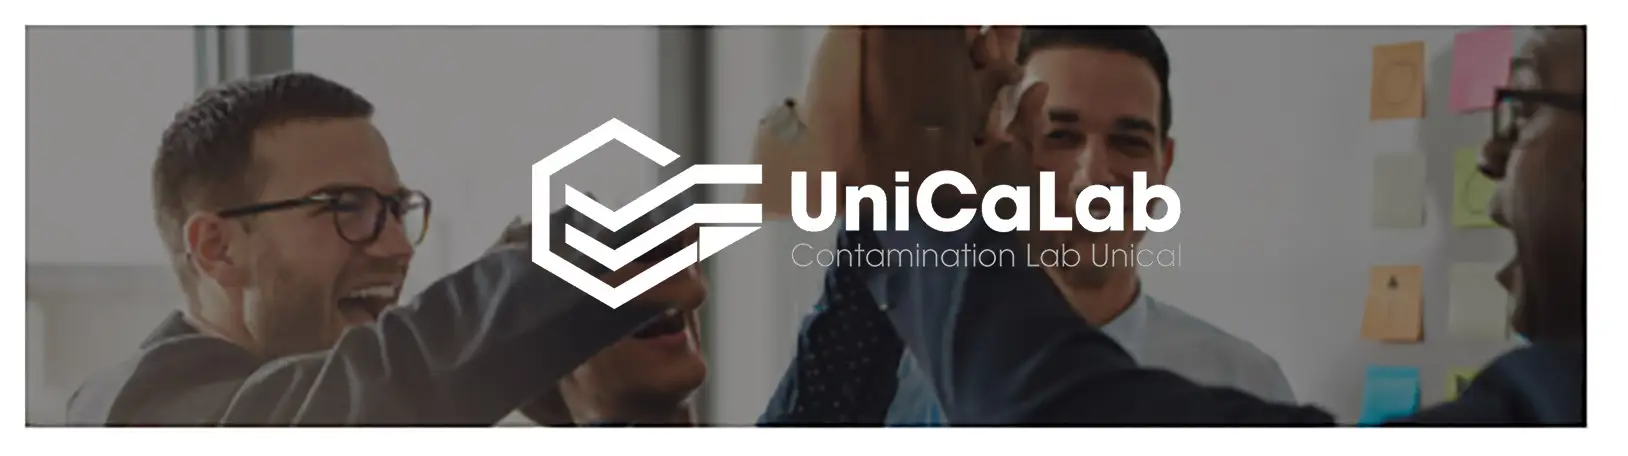 unicalab banner